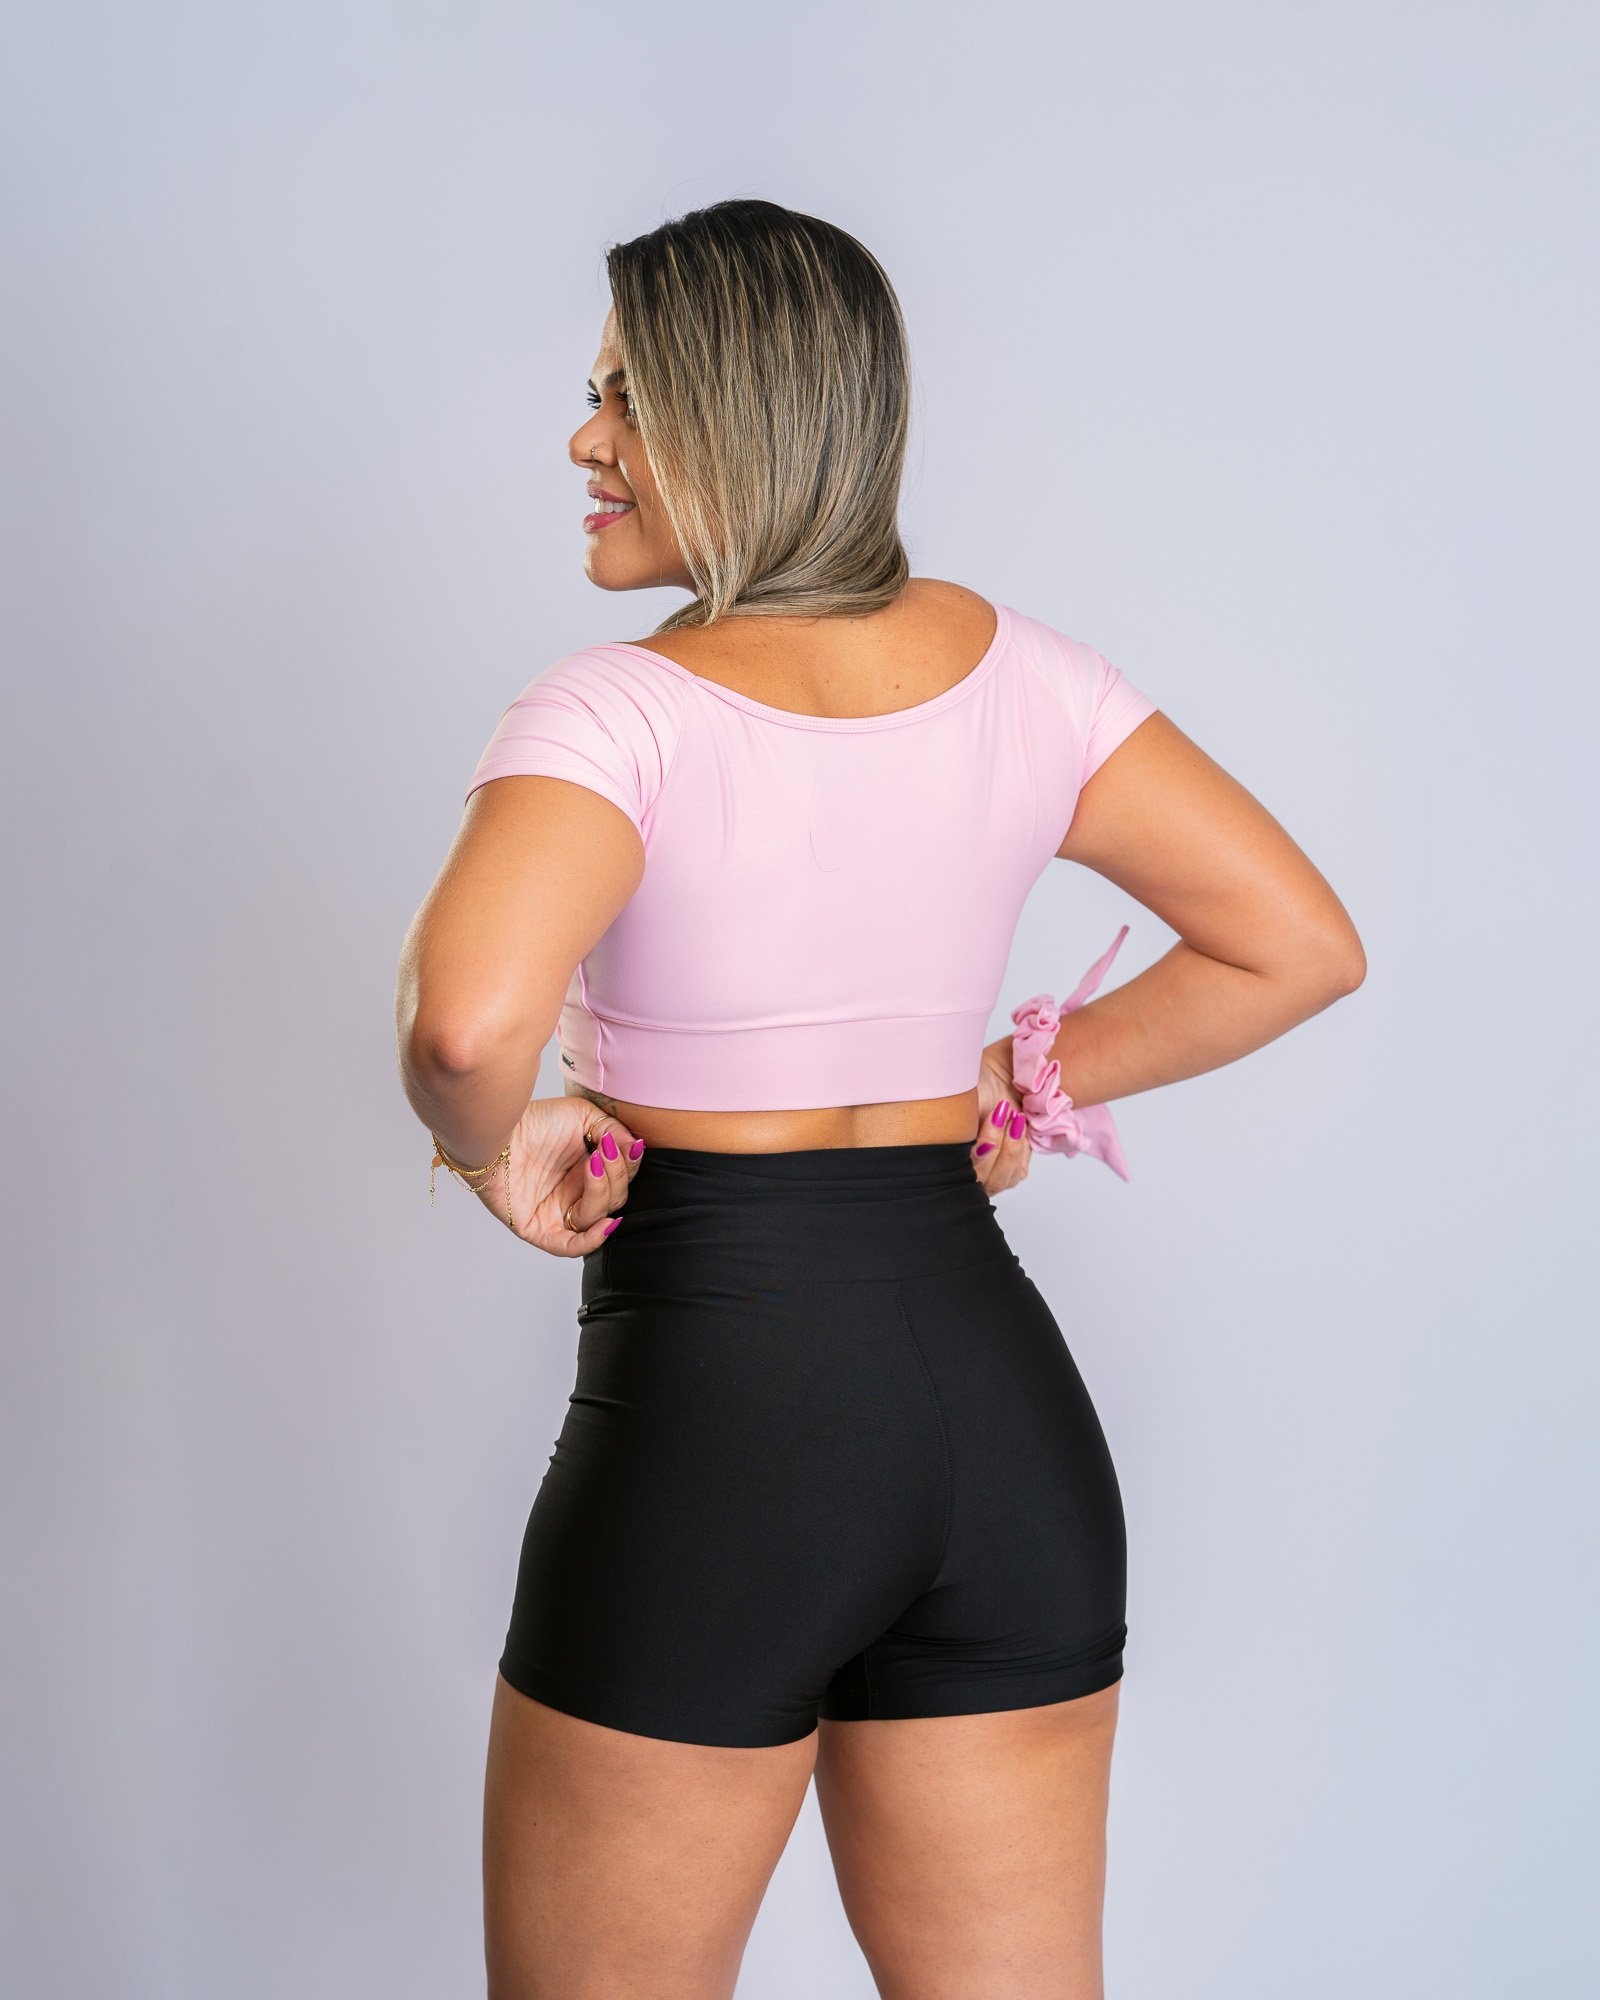 Calça legging fitness bicolor com tela nas laterais preta com rosa romance  - MTX